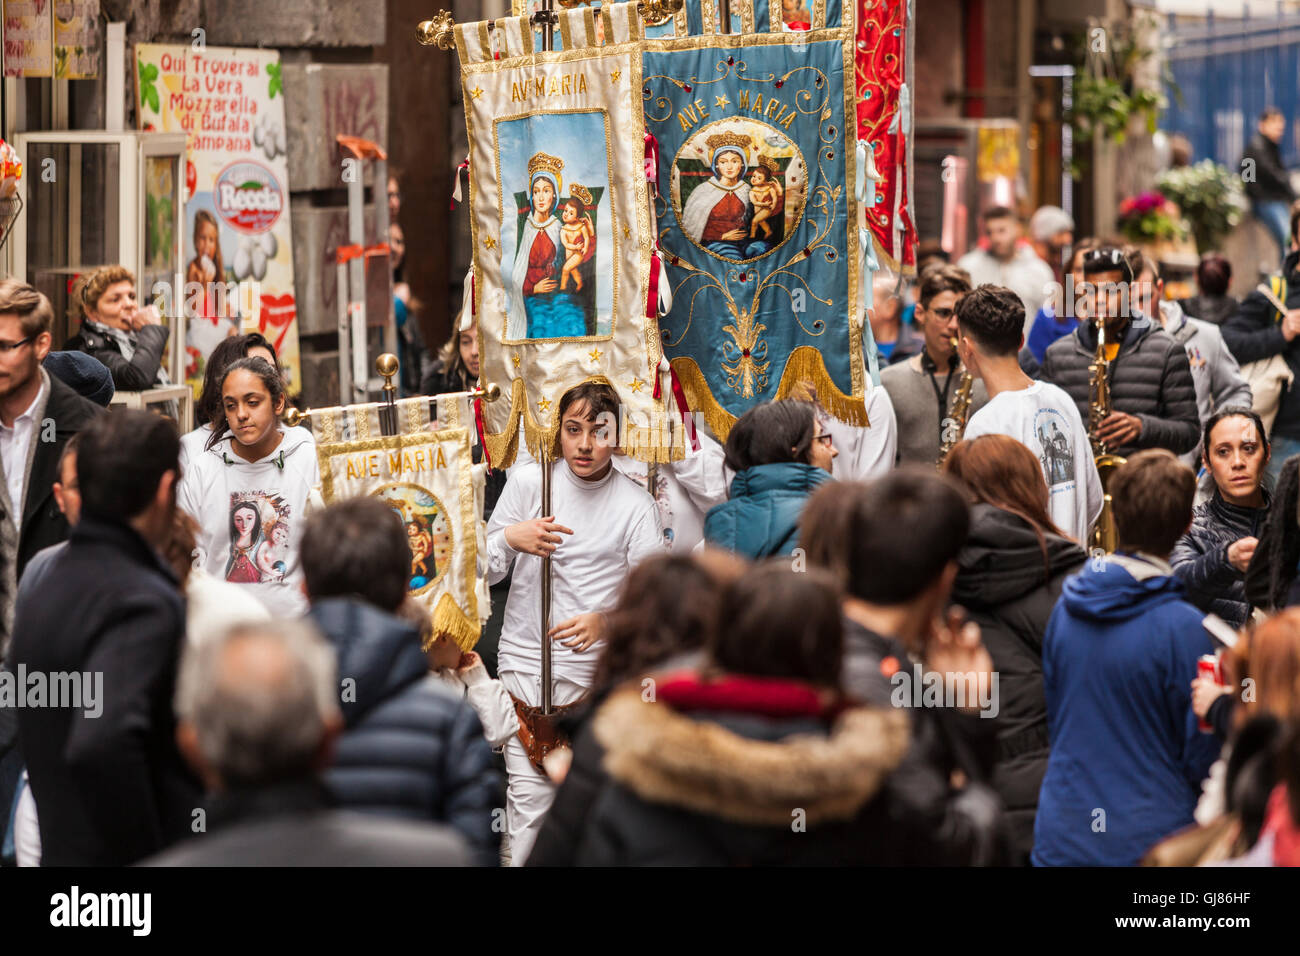 L'Italia, Napoli: processione religiosa in via dei Tribunali Foto Stock